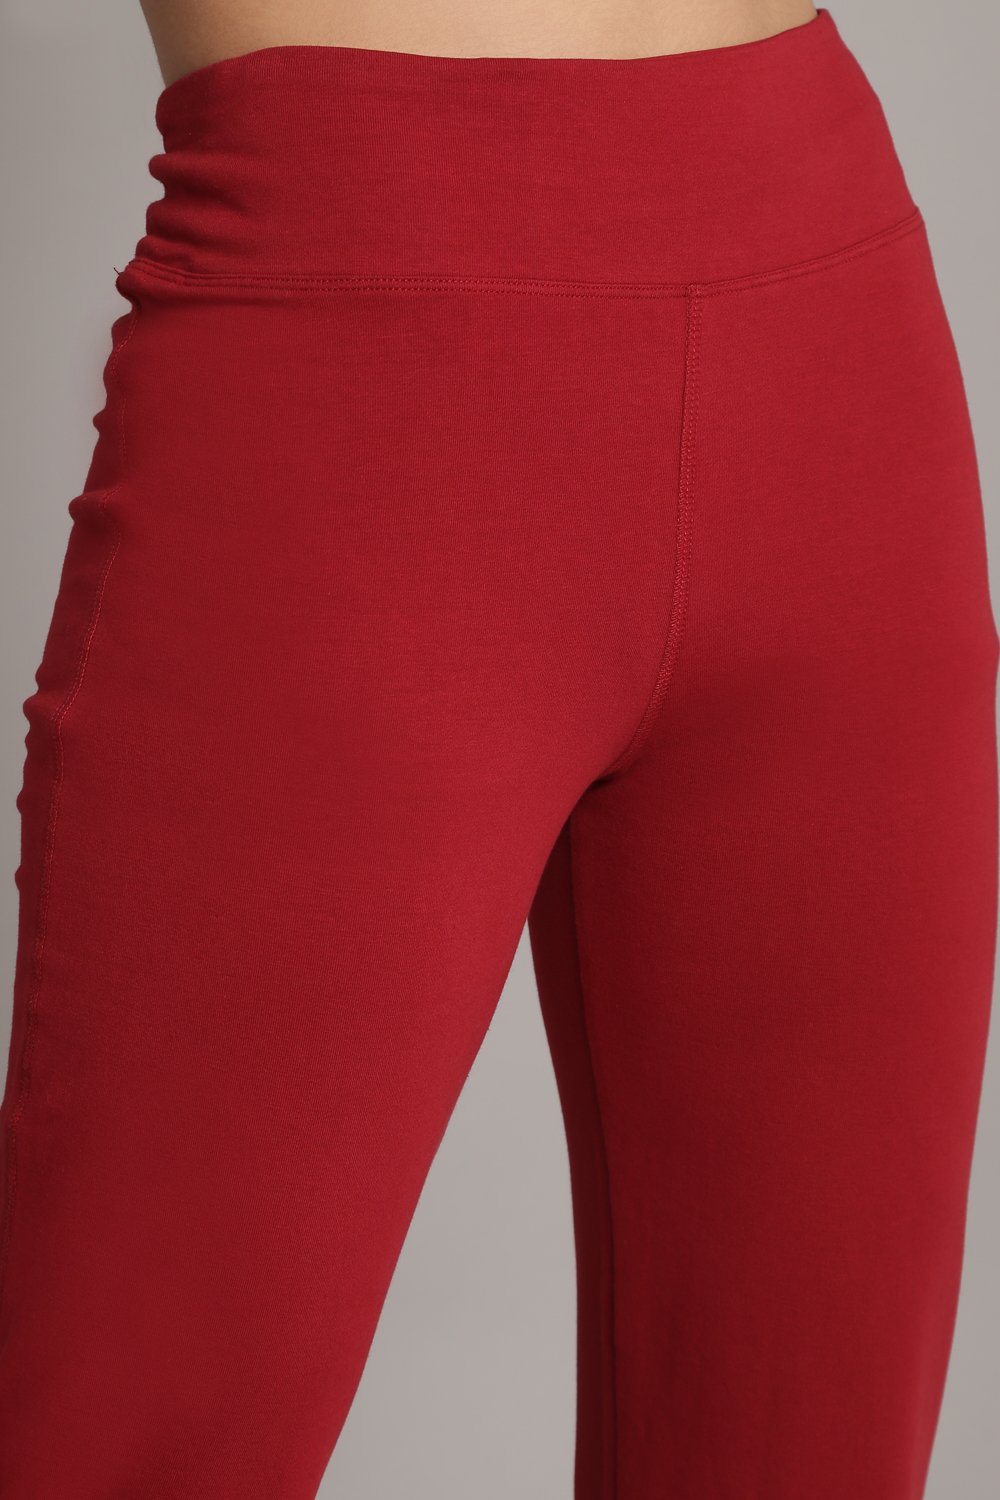 BIBA Women Regular Fit Cotton Blend Leggings (197726_Red_2XL)